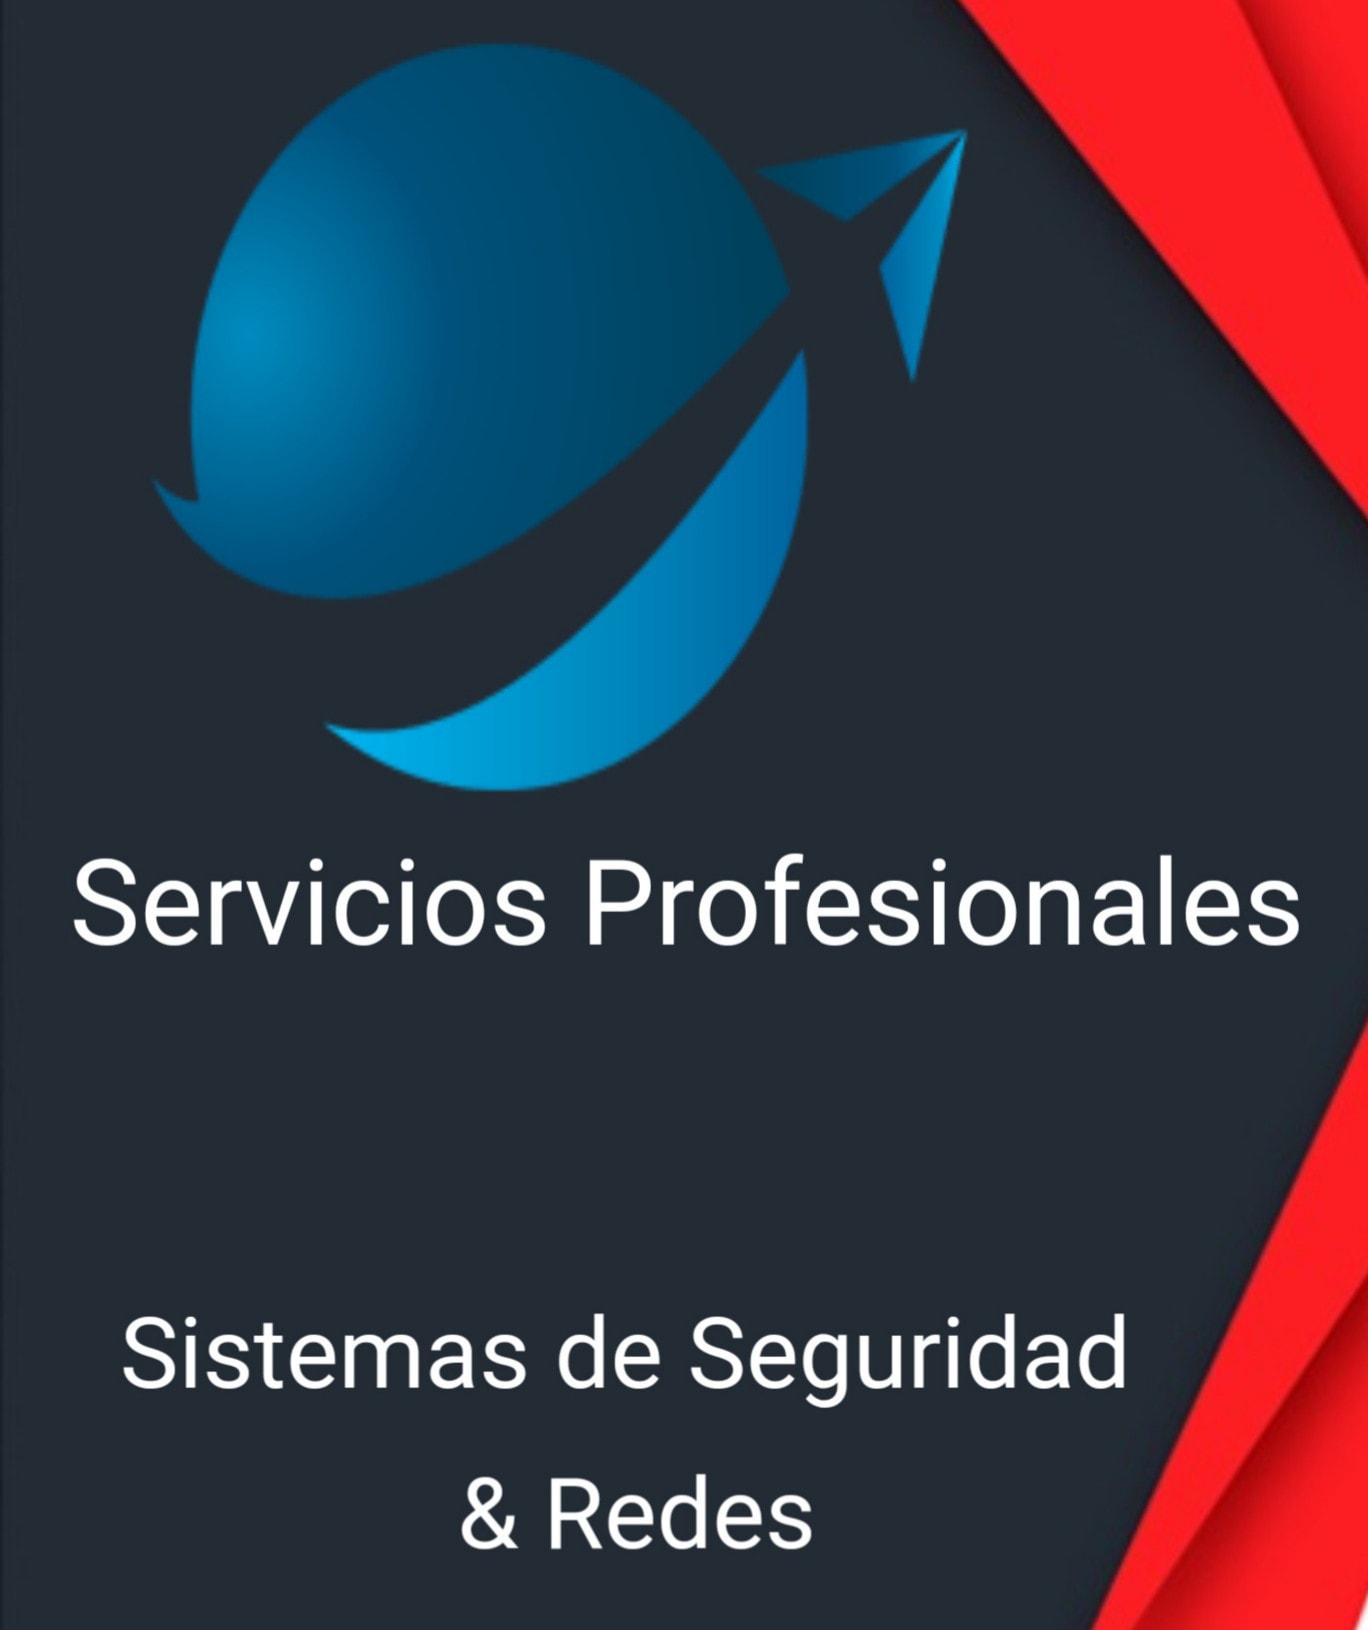 Servicios Profesionales Sistemas de seguridad & Redes